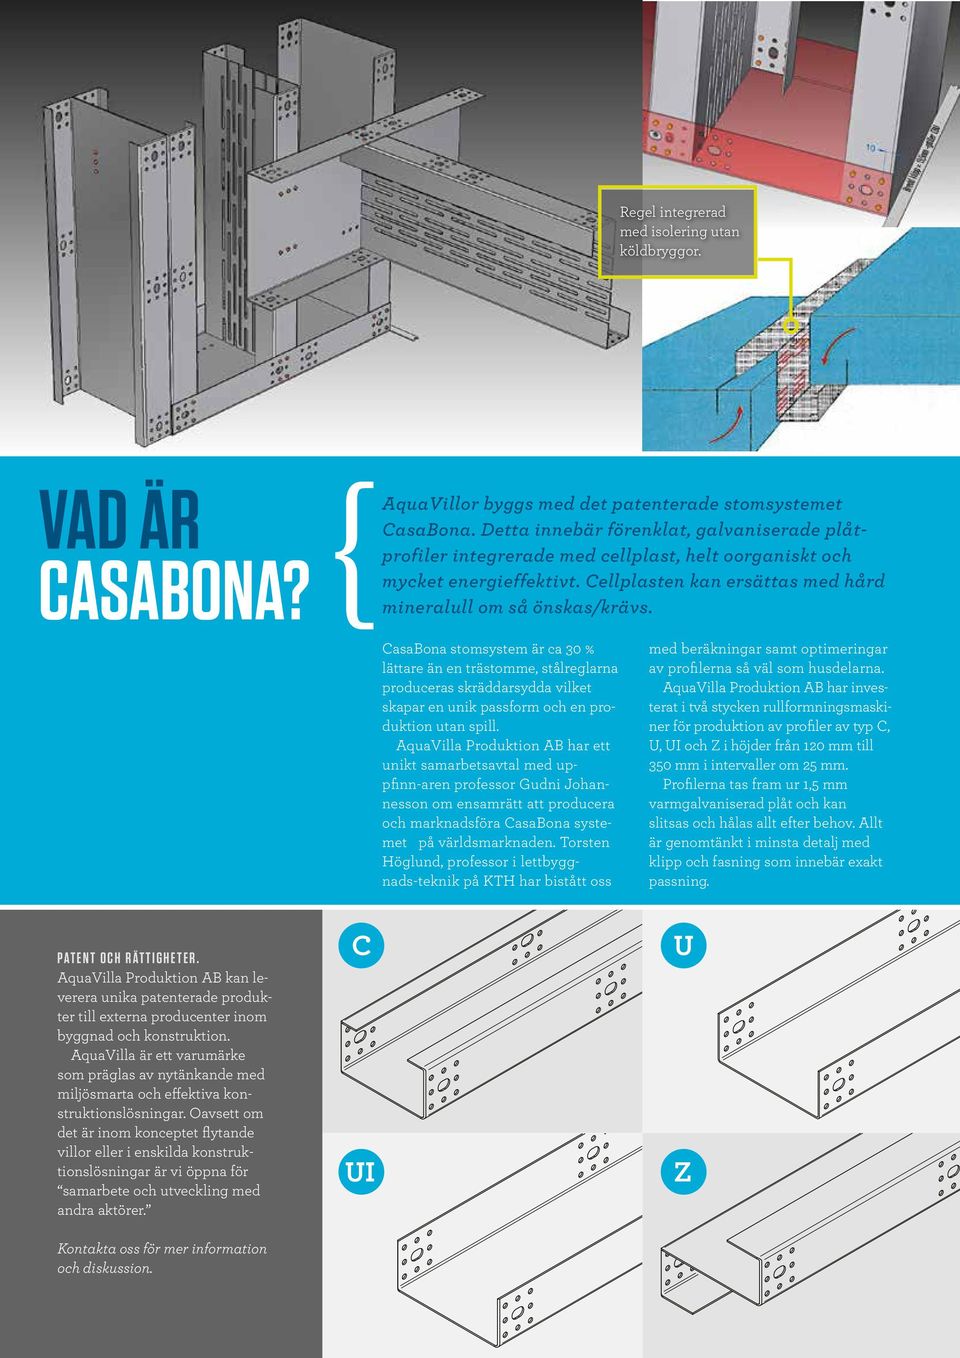 CasaBona stomsystem är ca 30 % lättare än en trästomme, stålreglarna produceras skräddarsydda vilket skapar en unik passform och en produktion utan spill.